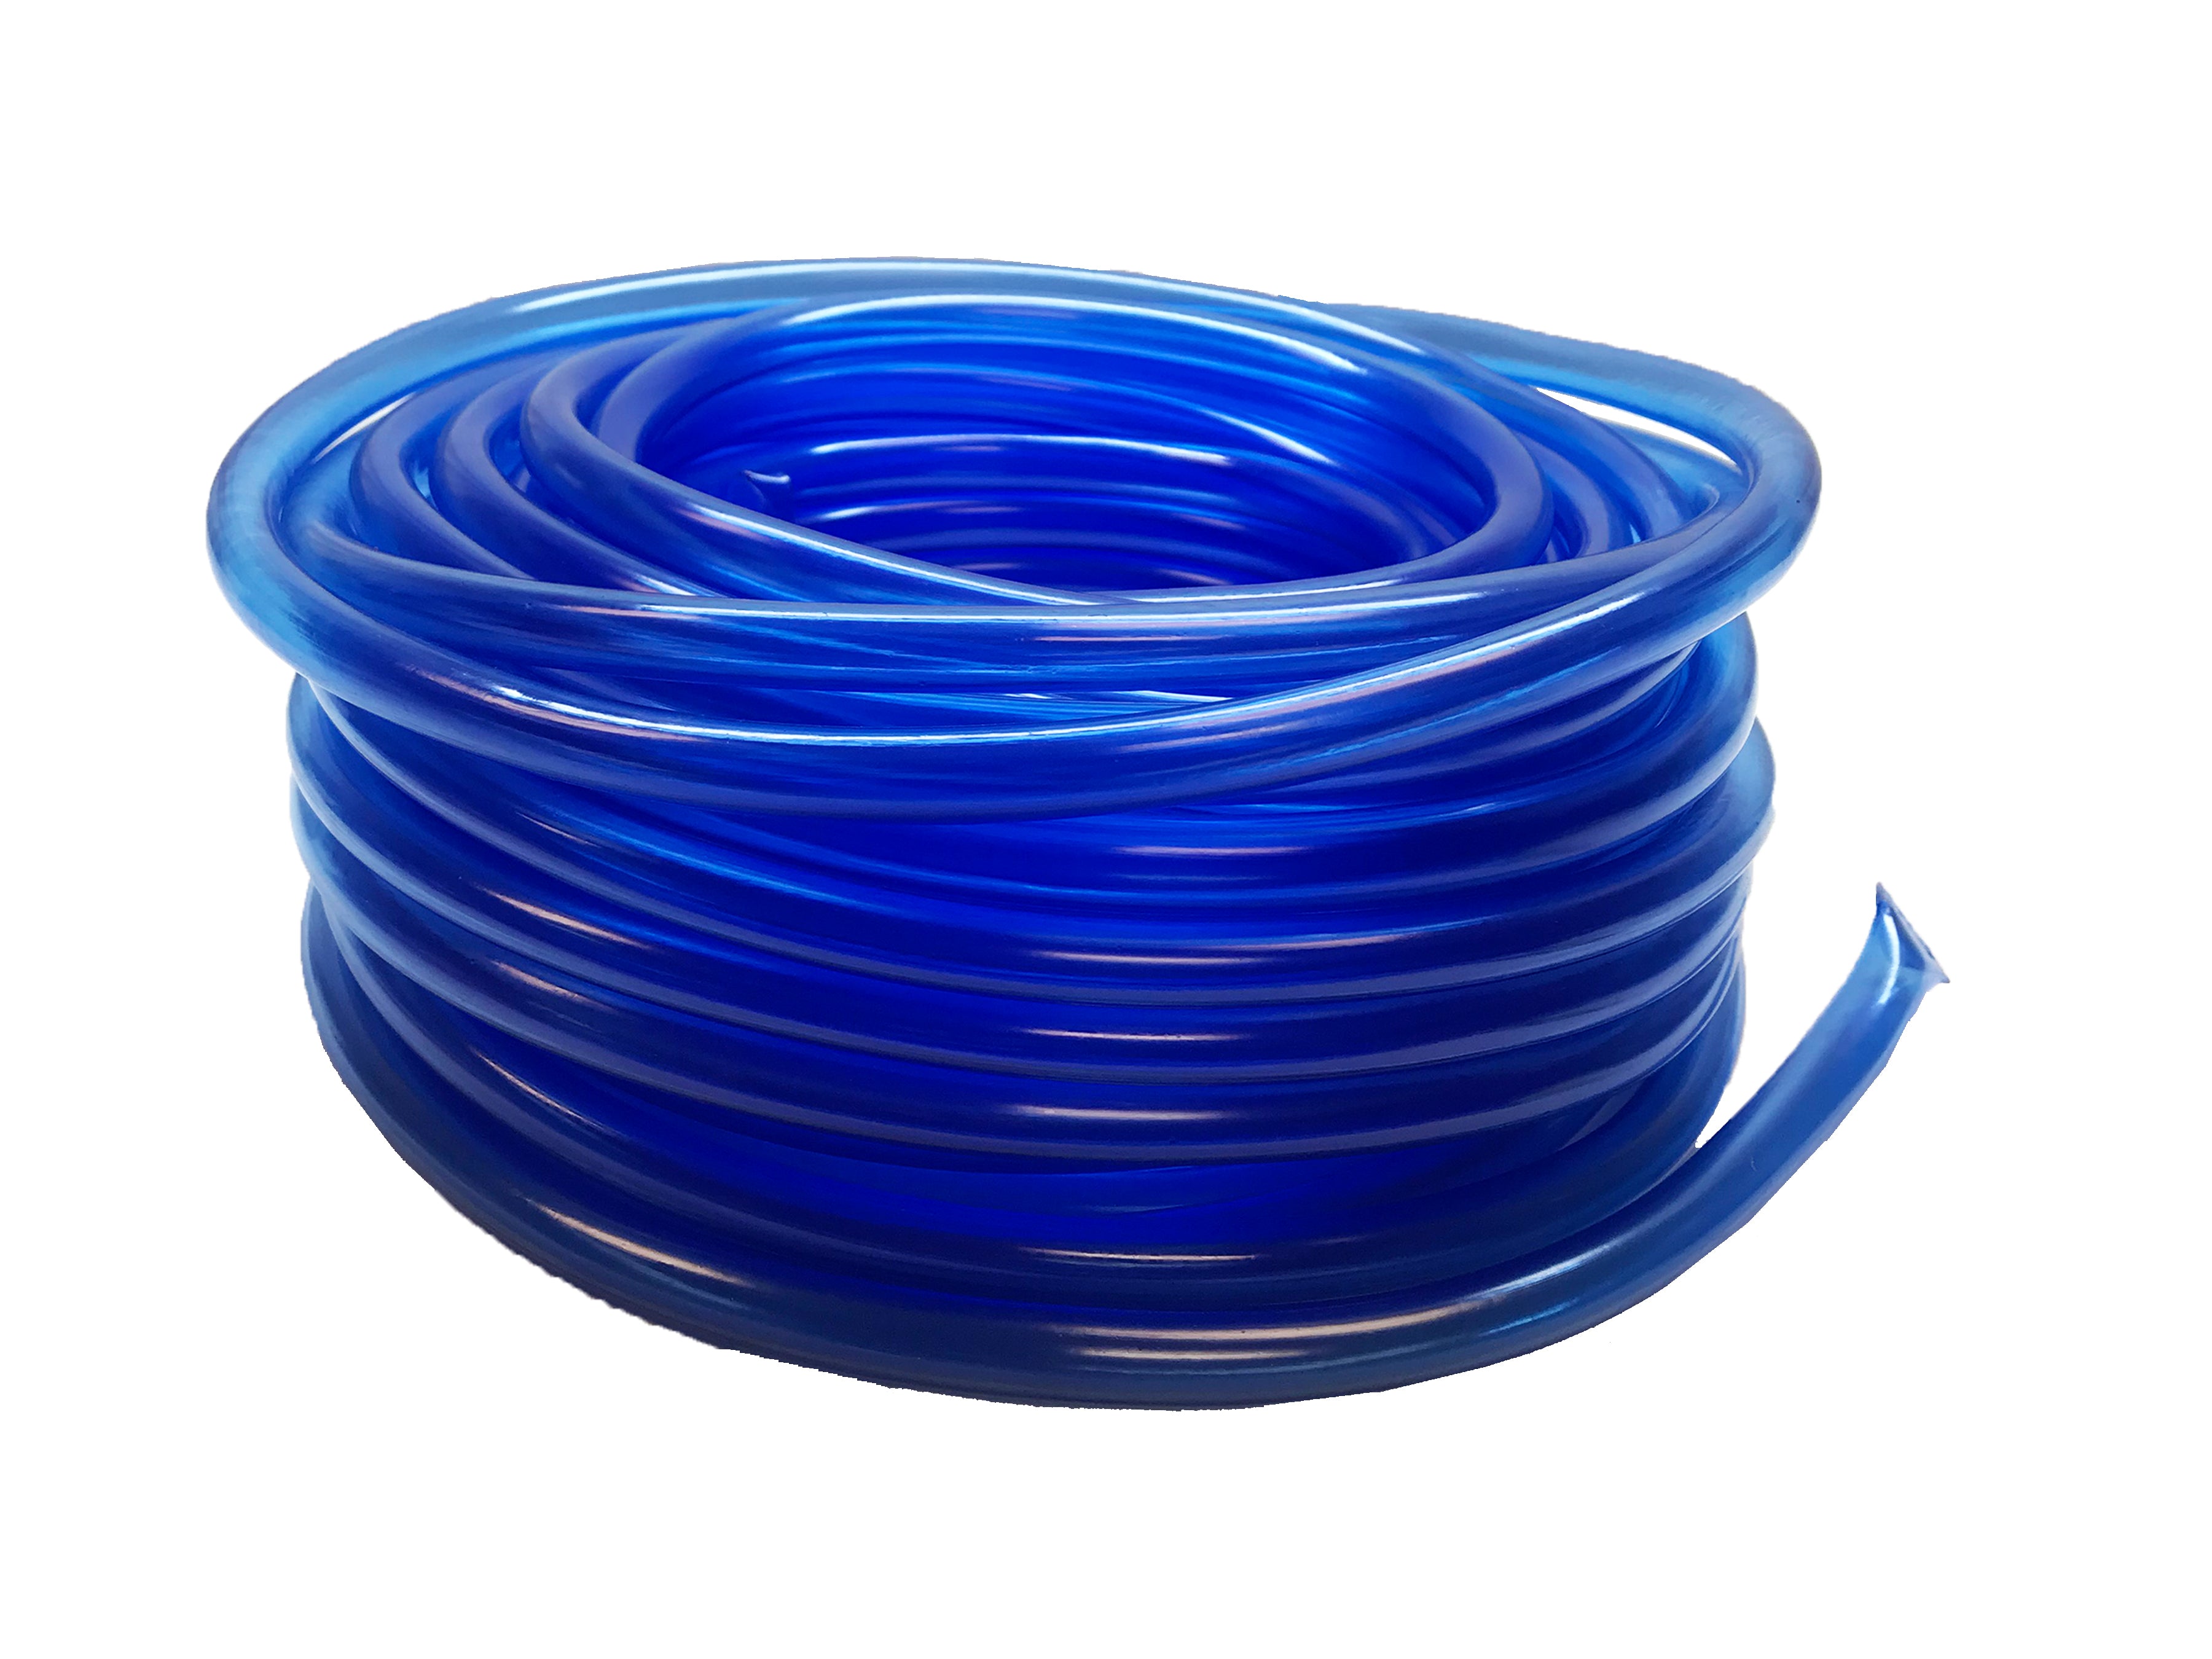 Viagrow Vinyl Multipurpose Irrigation Tubing (100ft, 1/2 ID-5/8 OD), Blue